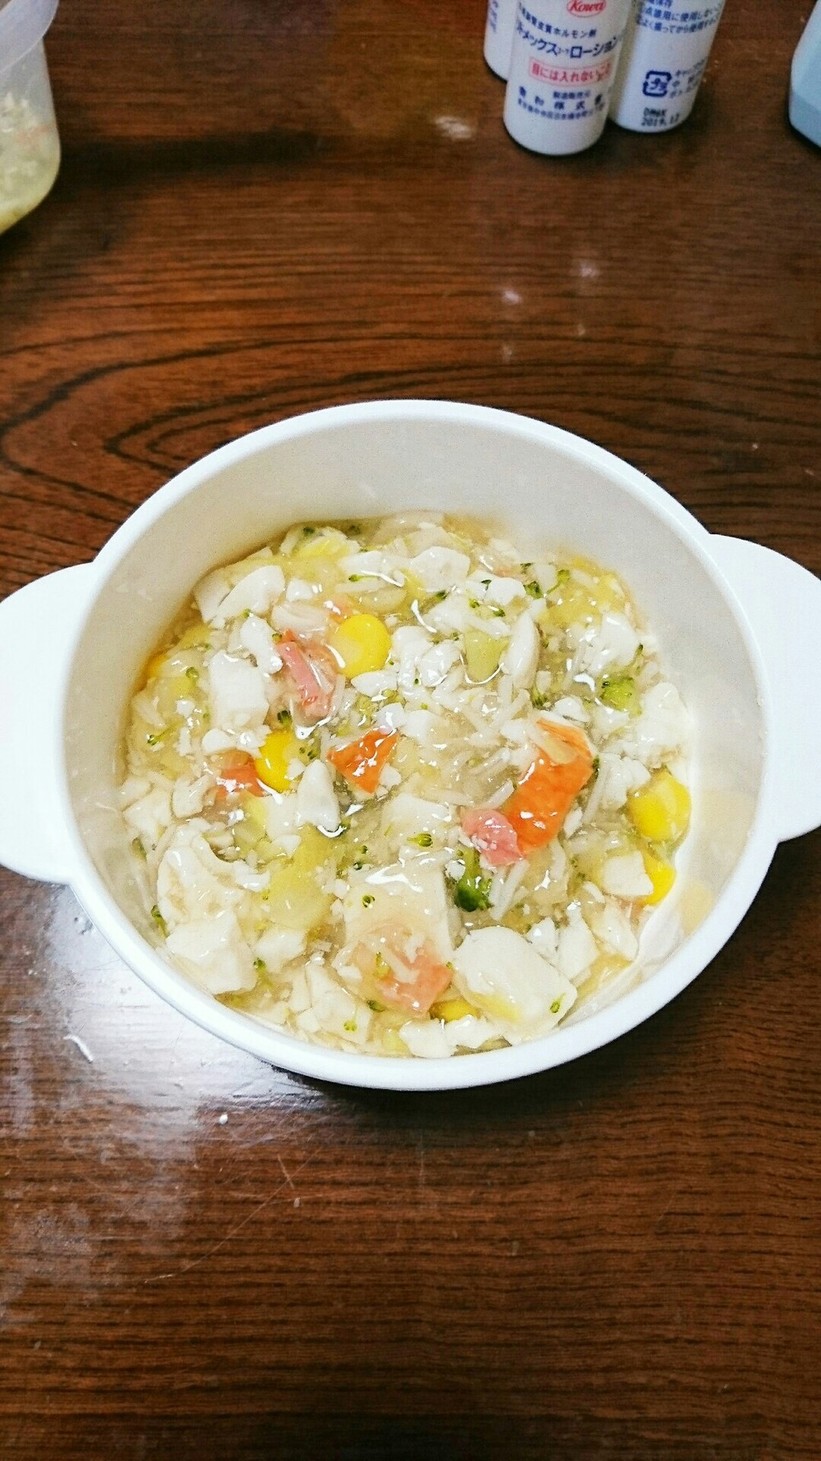 豆腐と野菜のあんかけ(離乳食後期完了期)